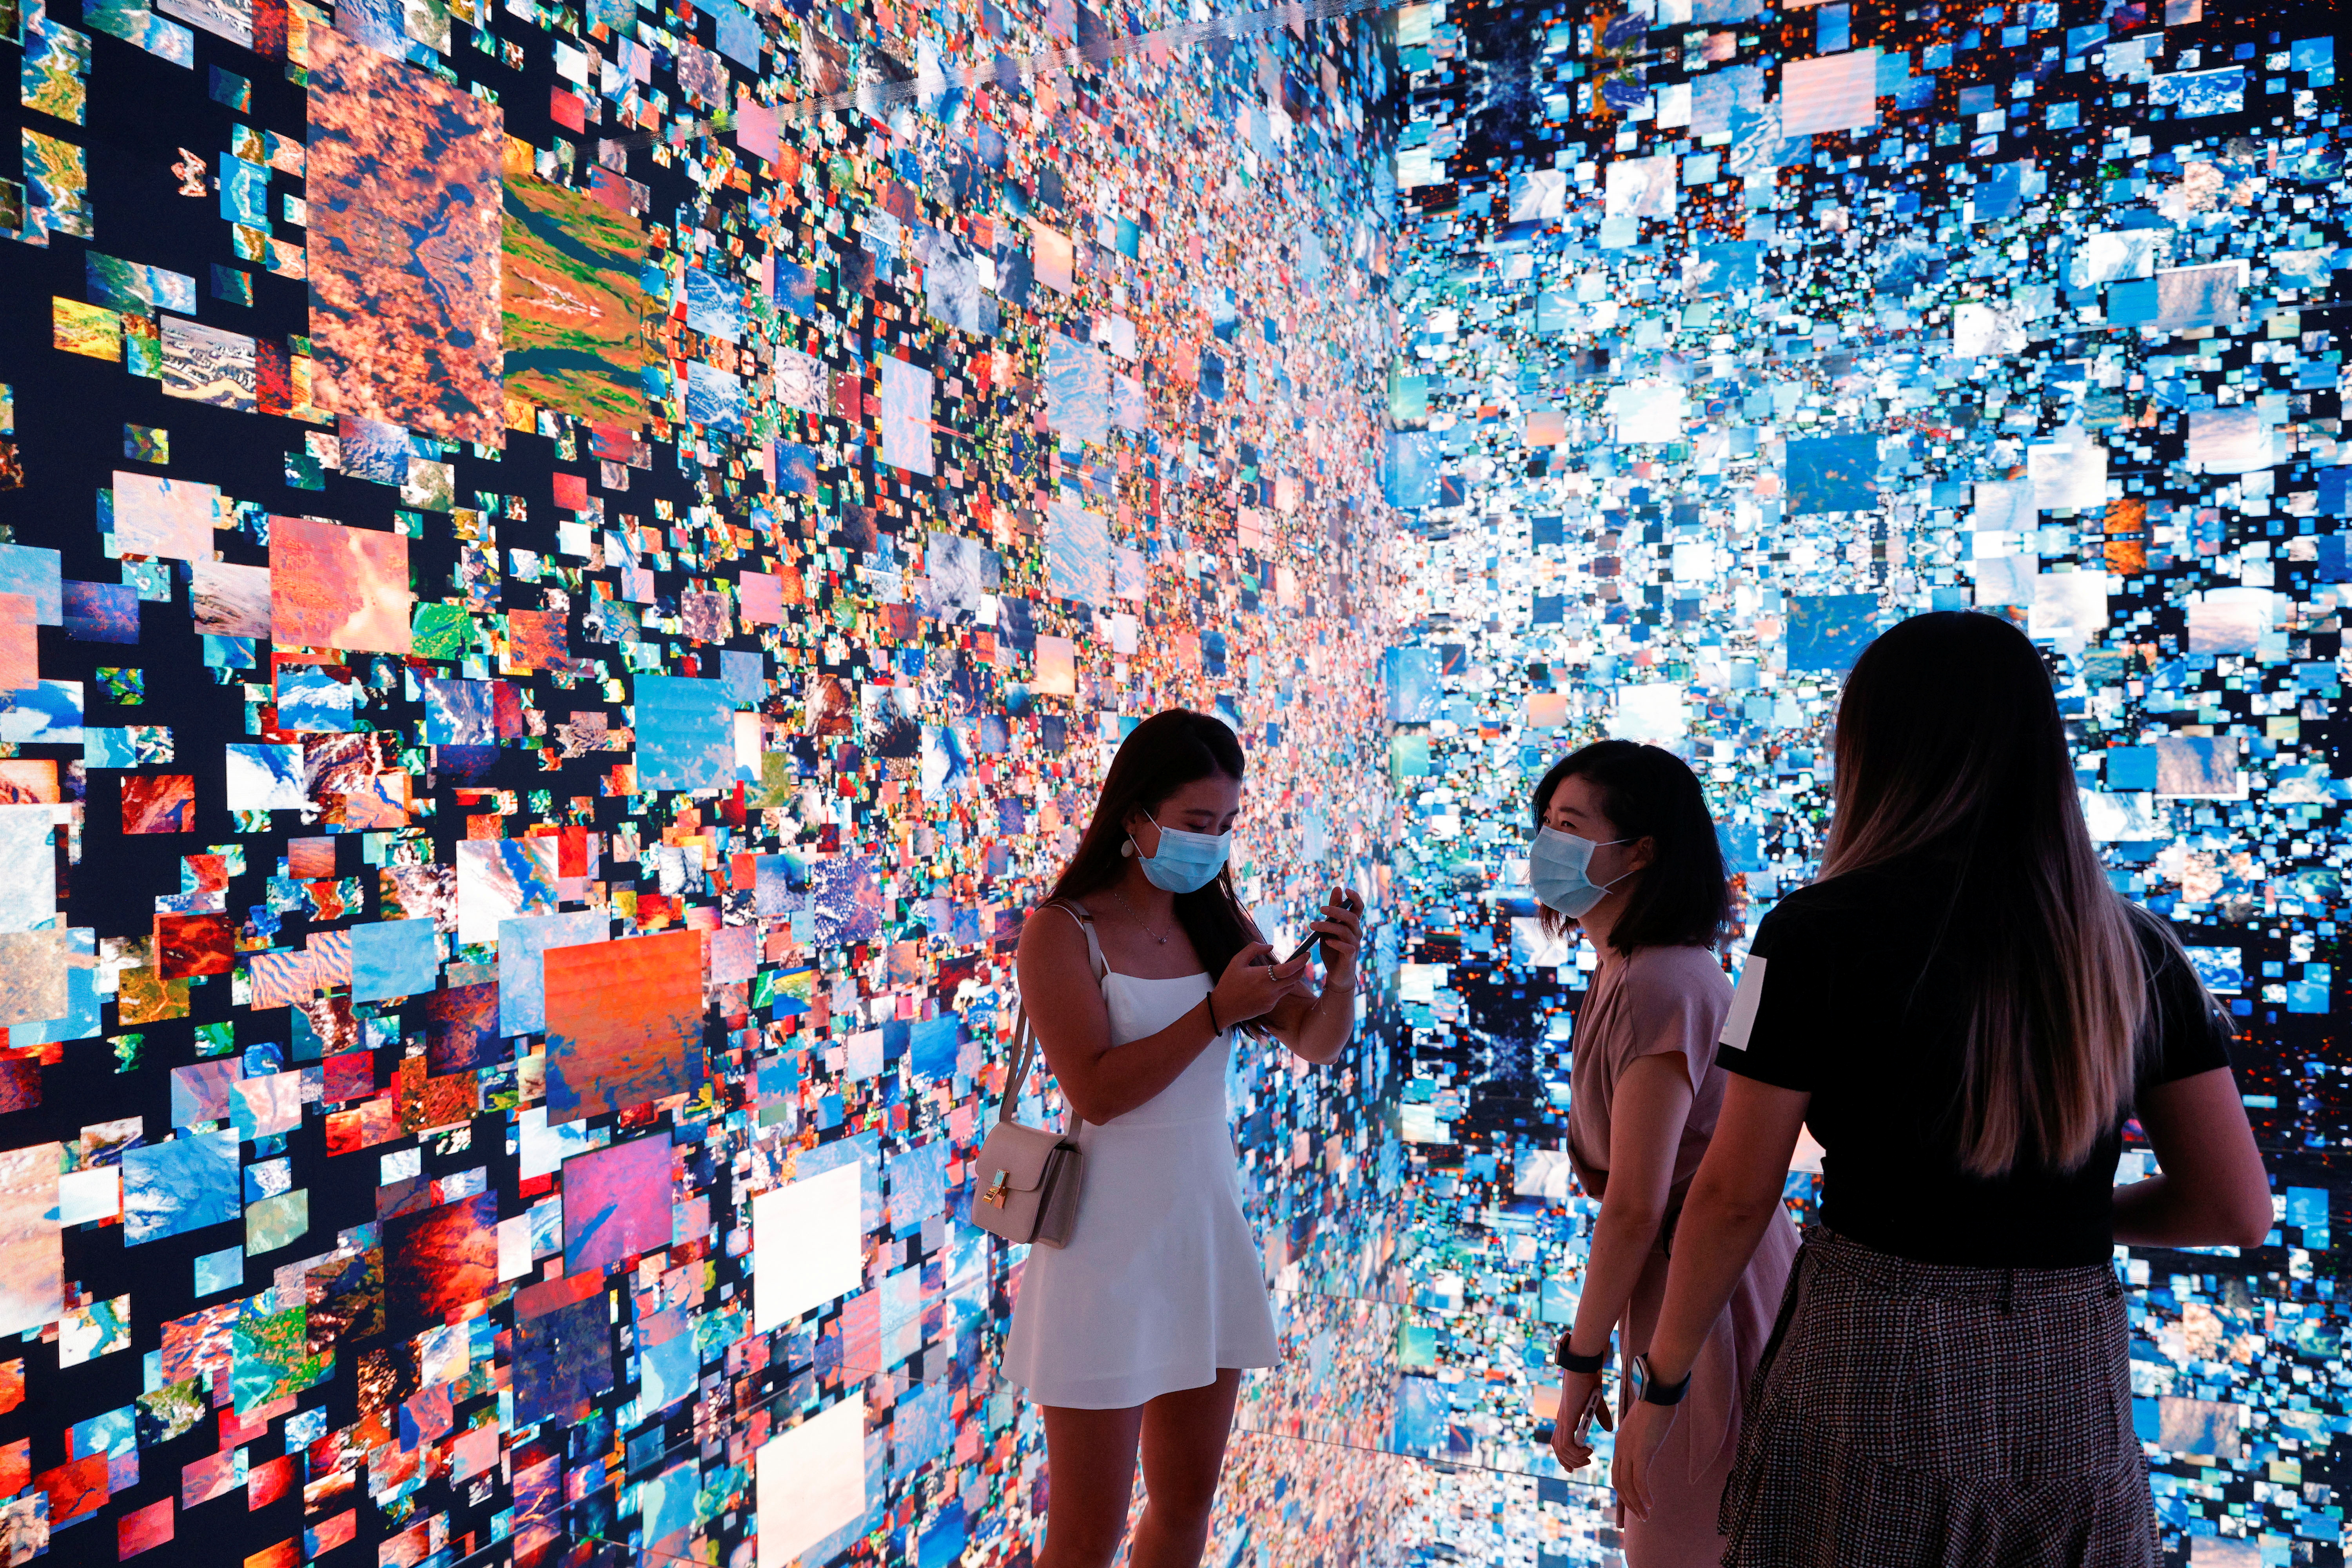 La instalación de arte inmersiva titulada "Machine Hallucinations - Space: Metaverso" del artista mediático Refik Anadol, que se convertió en NFT y se subastó en línea en Sotheby's, en la Feria de Arte Digital, en Hong Kong, China, el 30 de septiembre de 2021 (REUTERS/Tyrone Siu)